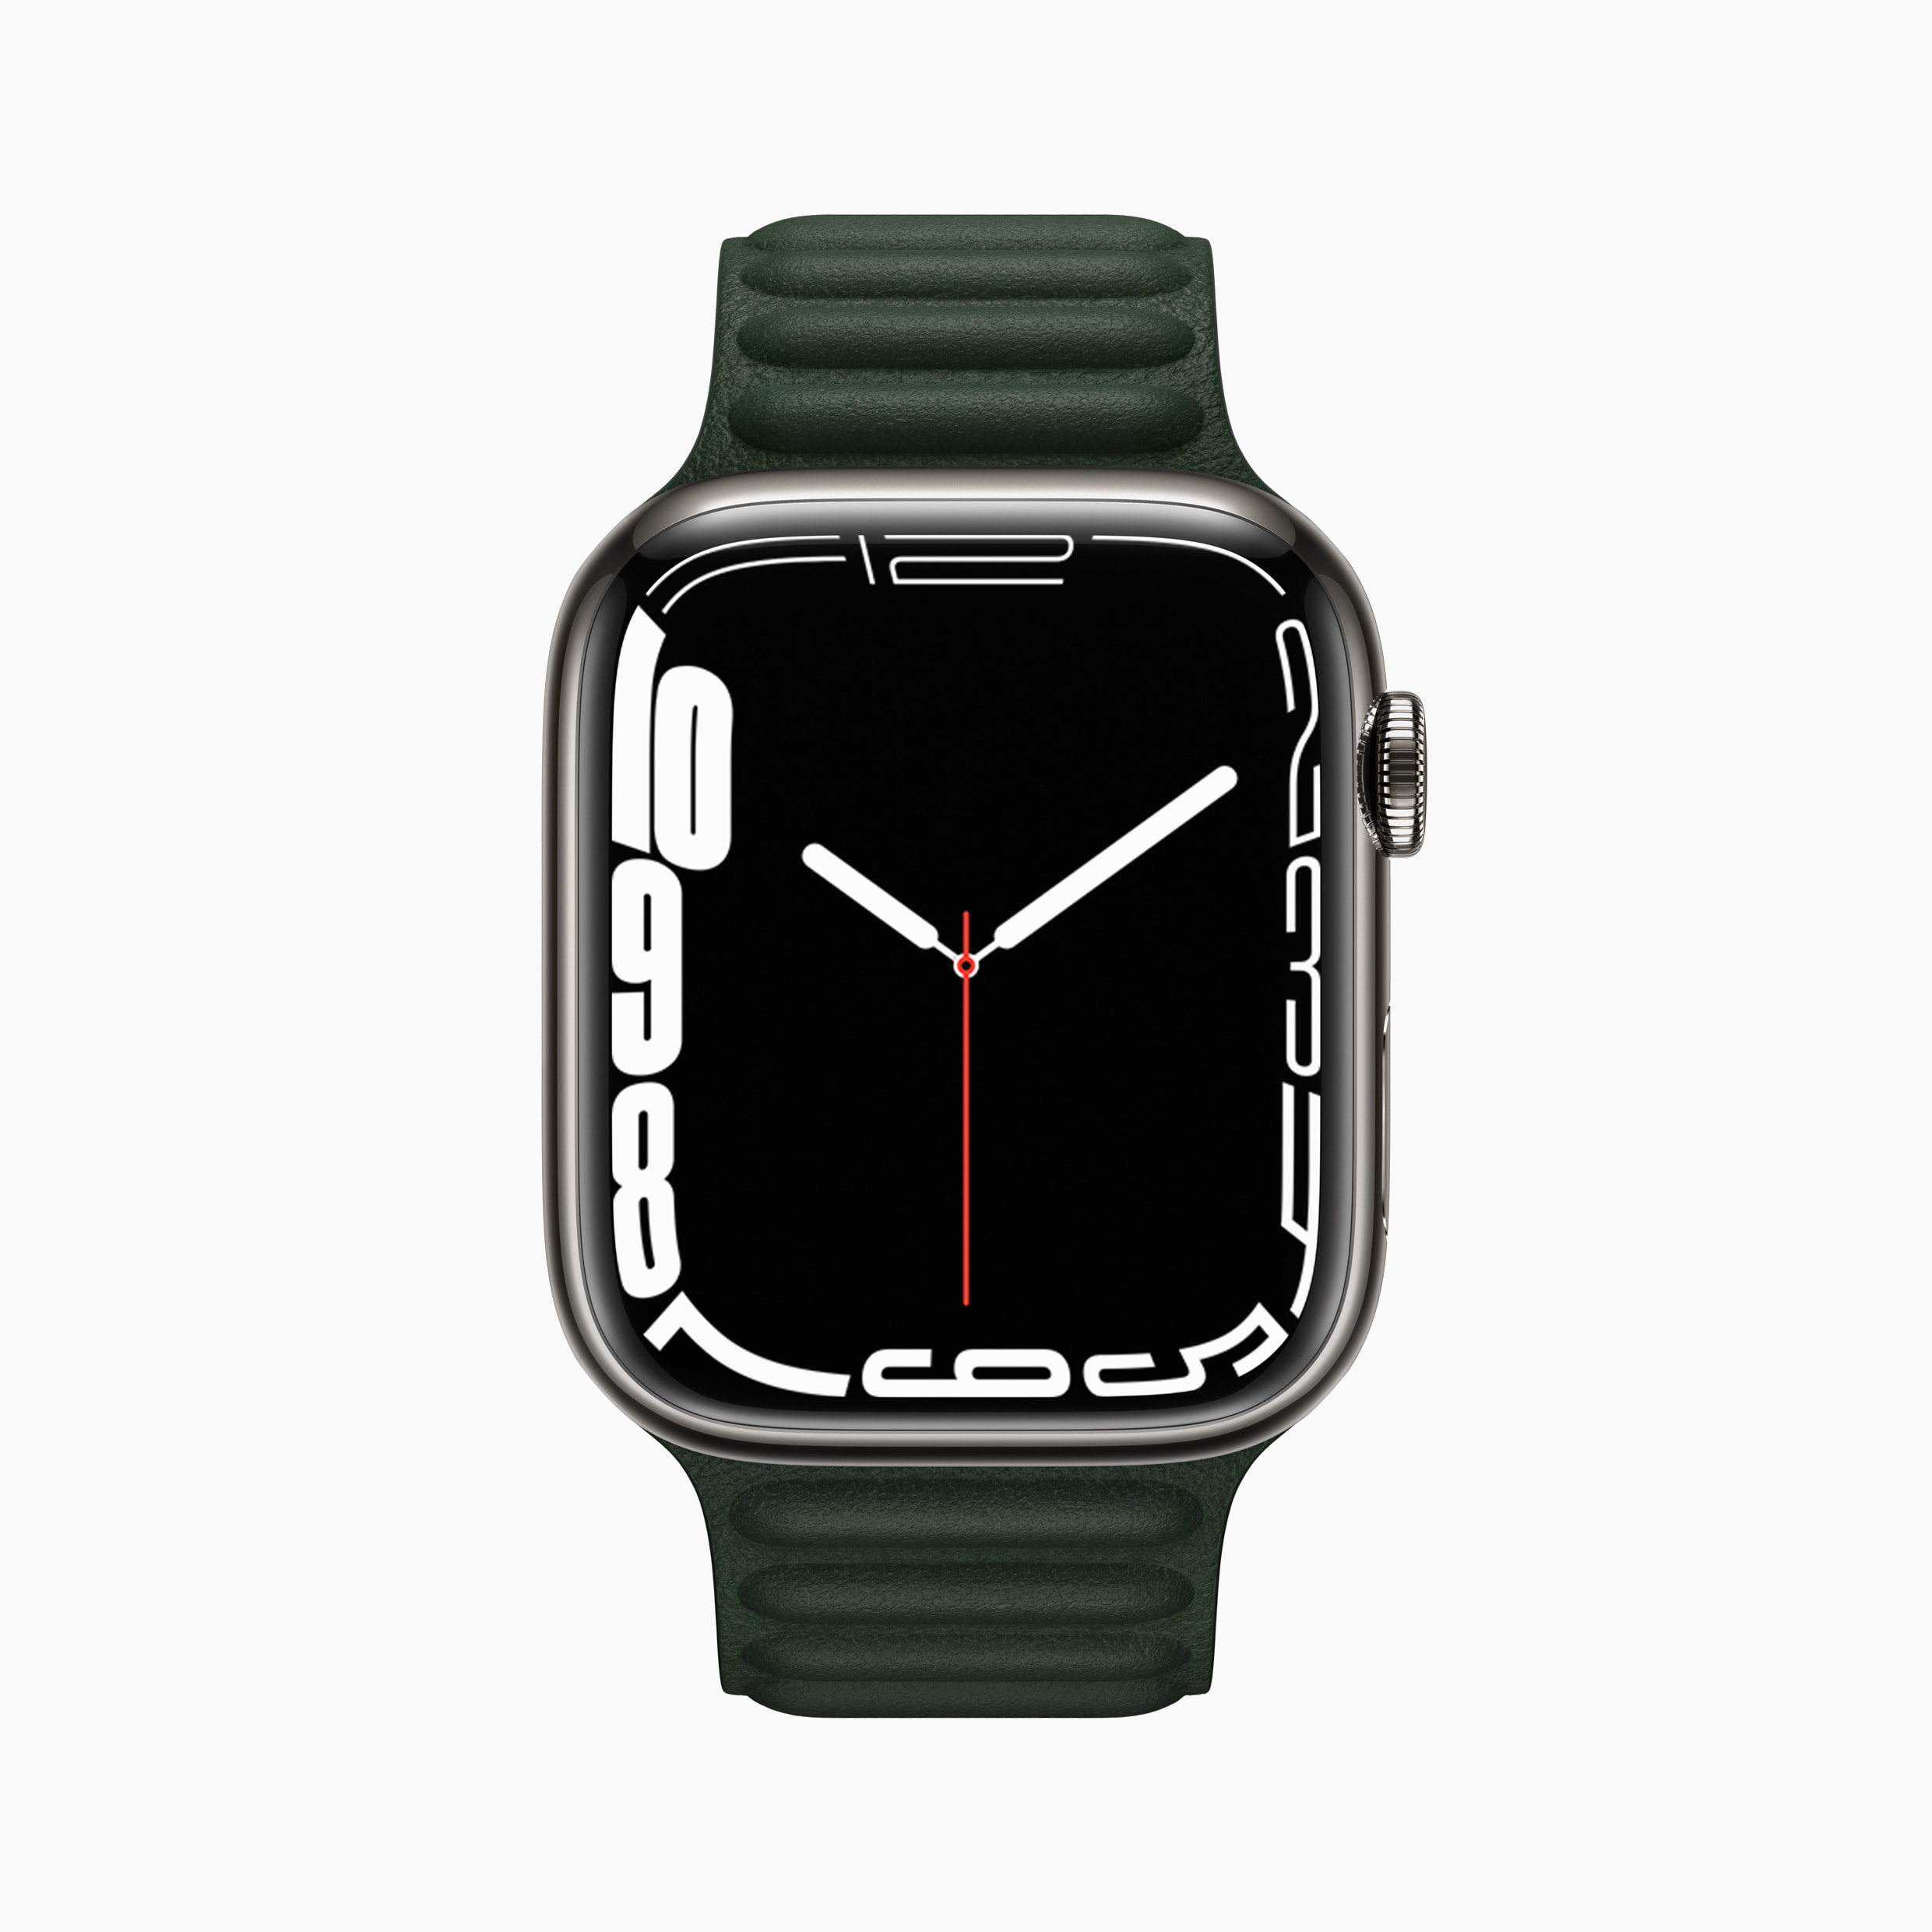 Apple Watch Series 3 38mm mới chưa active chỉ hơn